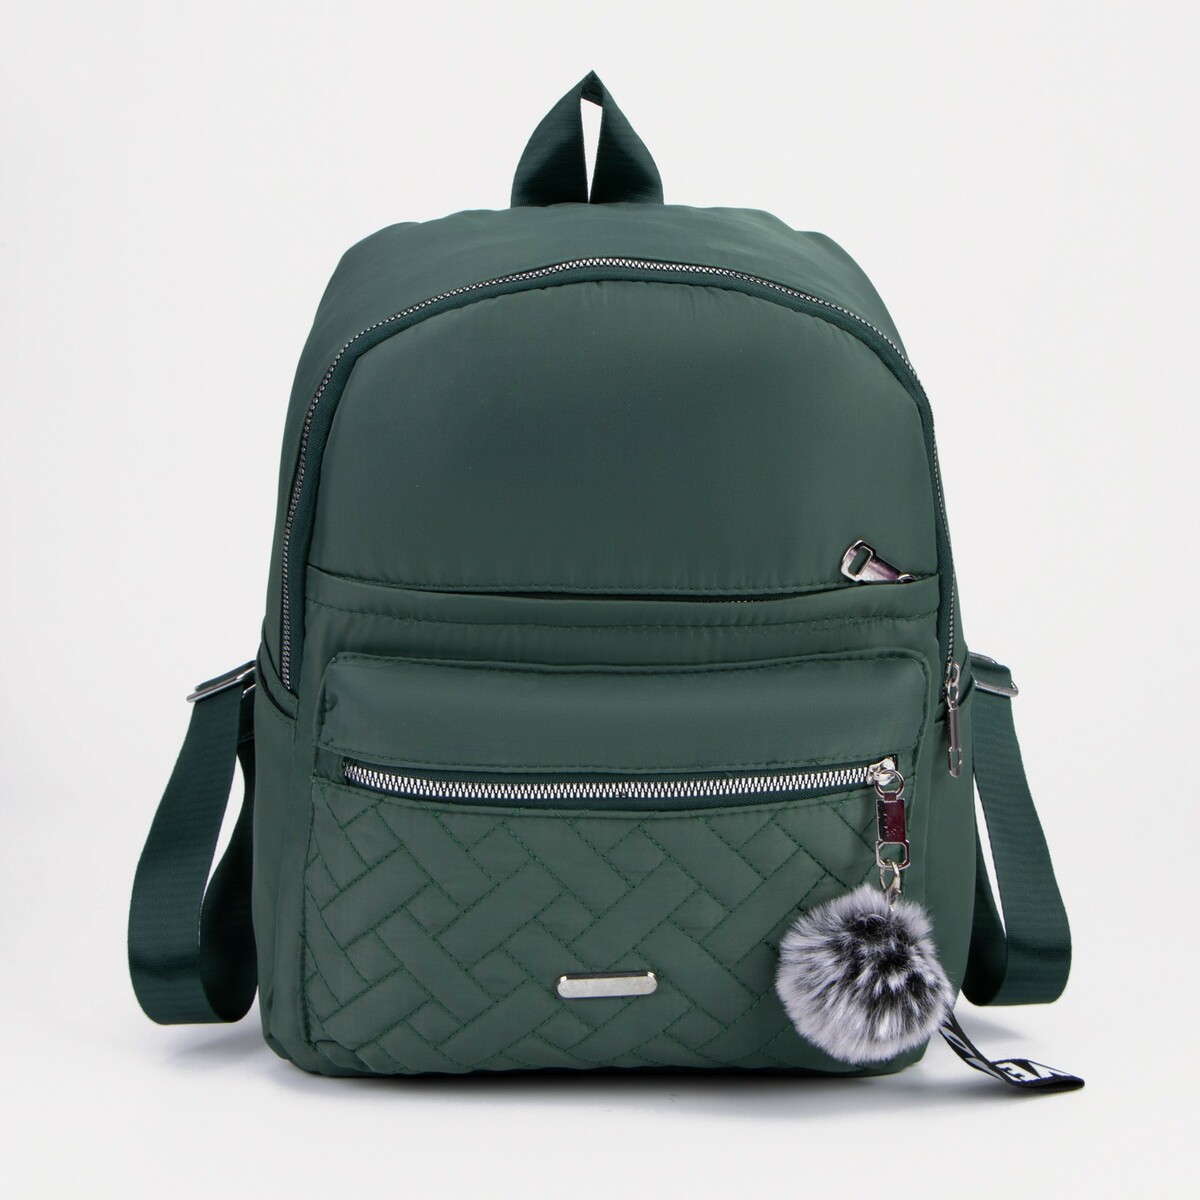 Рюкзак, отдел на молнии, 2 наружных кармана, 2 боковых кармана, цвет зелёный, No brand